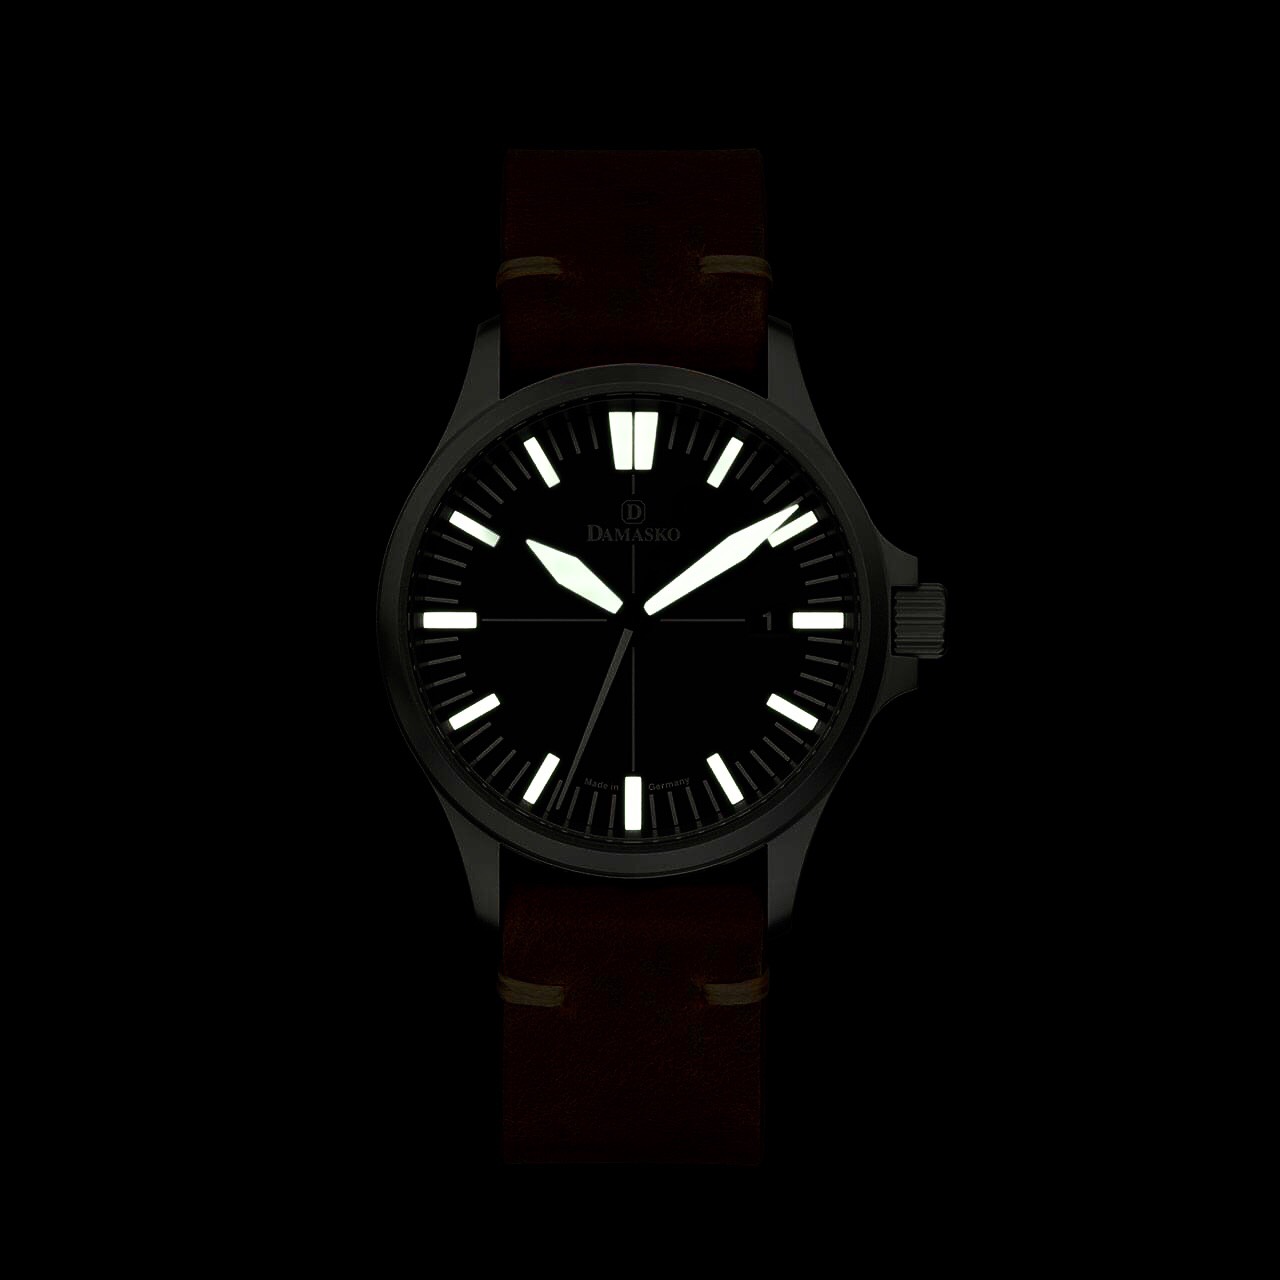 ダマスコ(DAMASKO) No.DS30L | 小柳時計店 | ブランド腕時計の正規販売